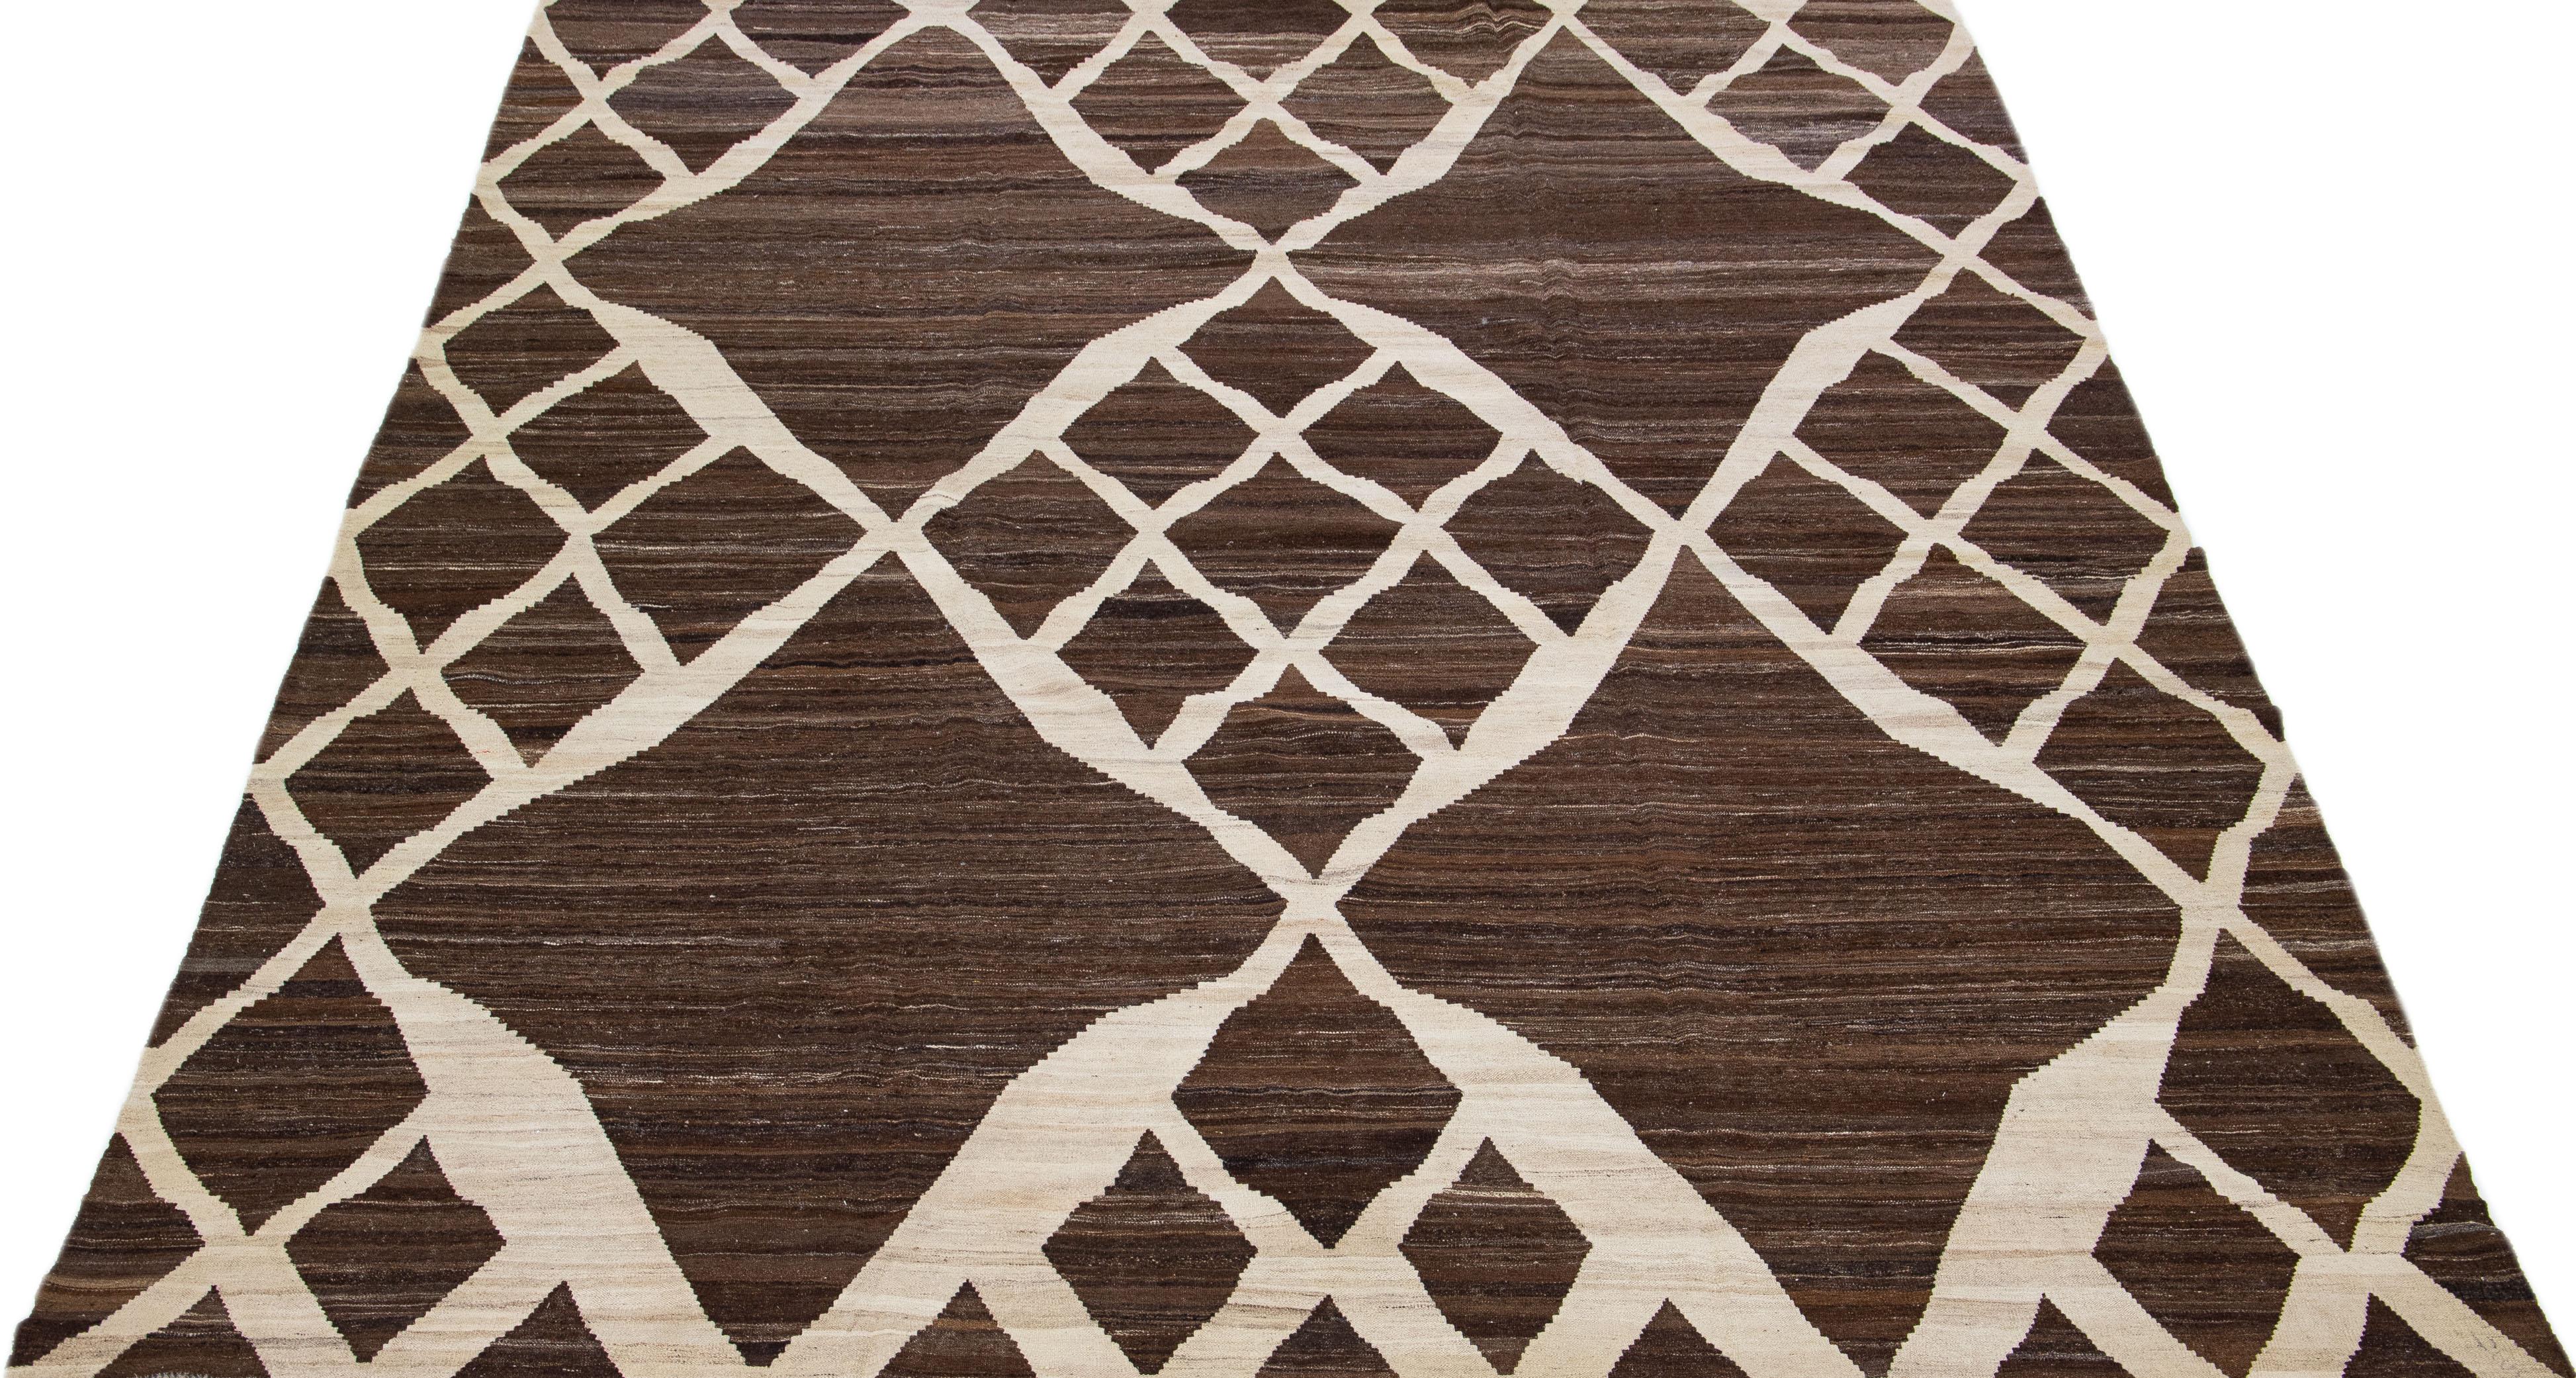 Magnifique tapis Kilim contemporain en laine tissée à plat avec un champ de couleur marron. Ce tapis turc présente un magnifique motif géométrique en beige. 

Ce tapis mesure : 10'1